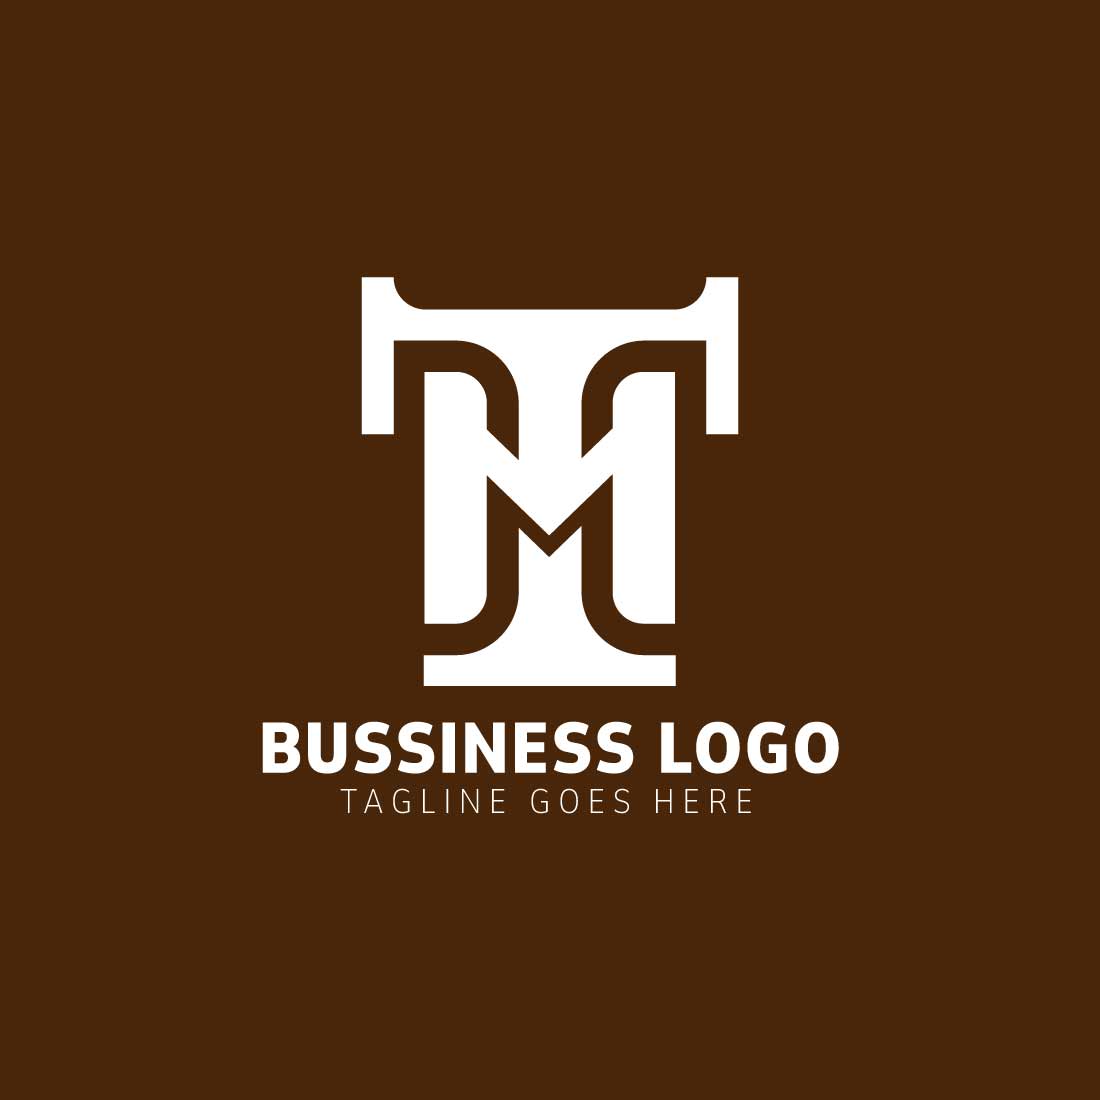 Professional TM Monogram logo design cover image.